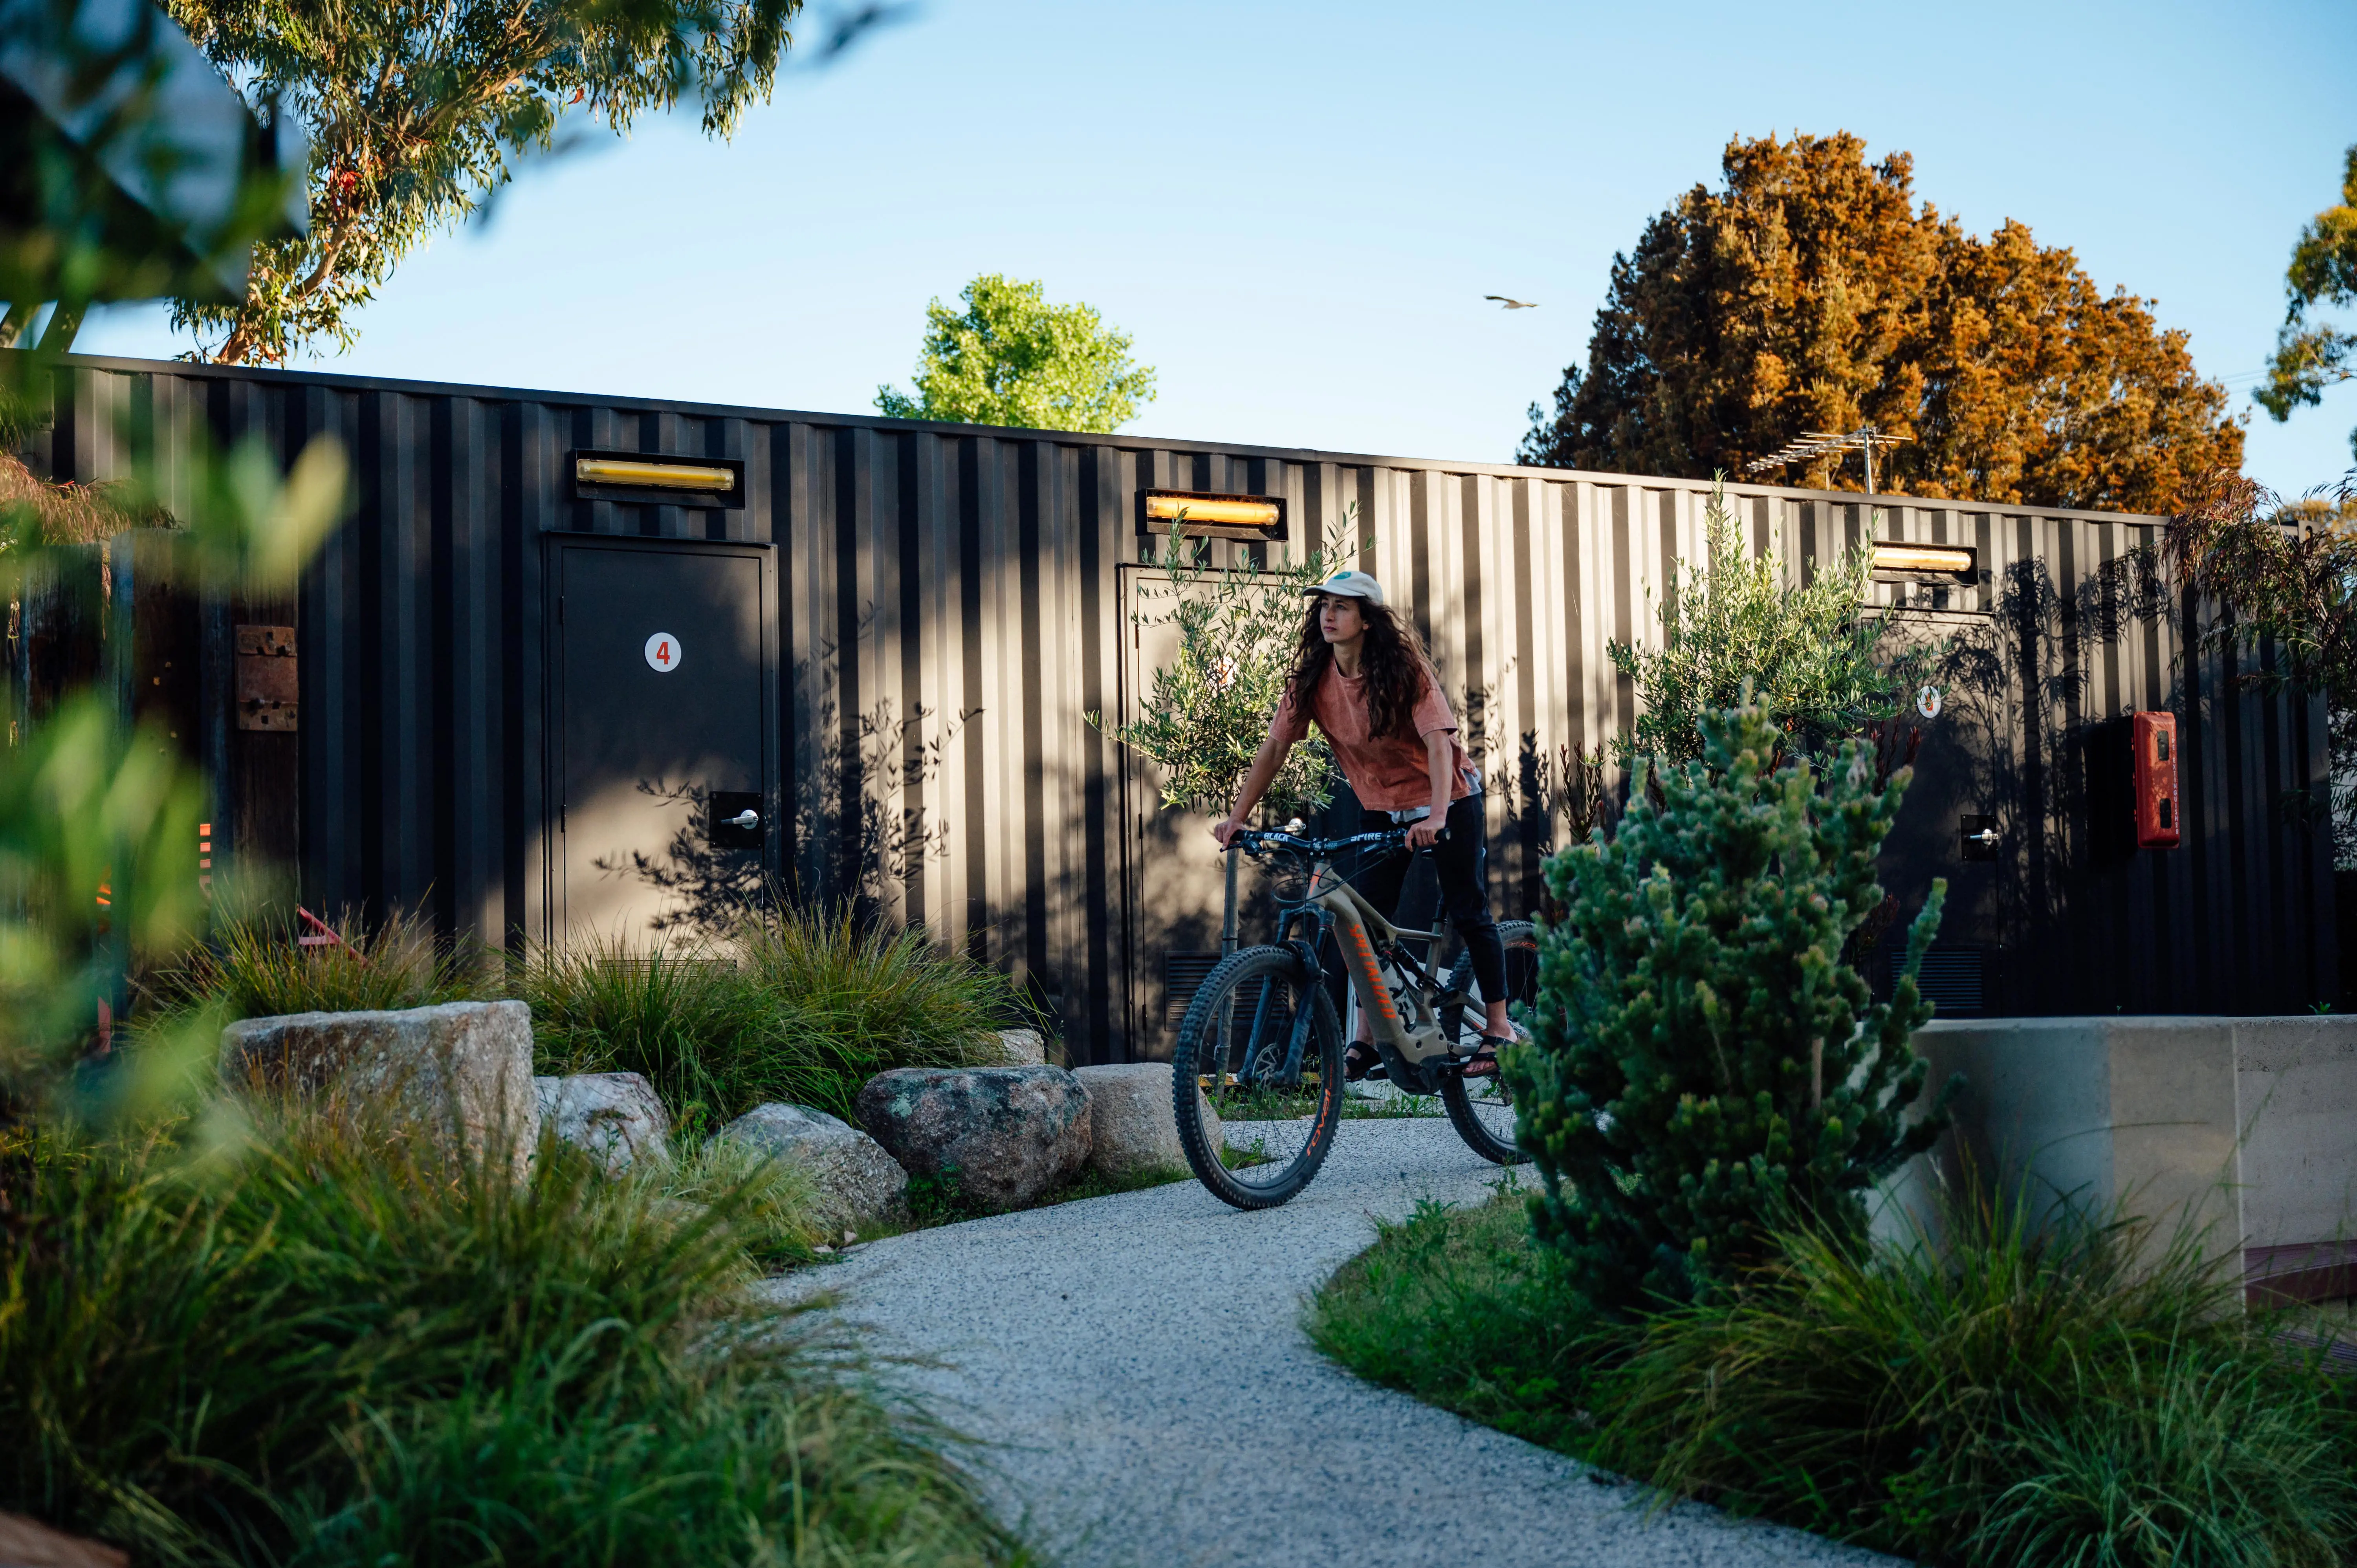 A young woman rides a mountain bike on a gravel path through a native plant garden.